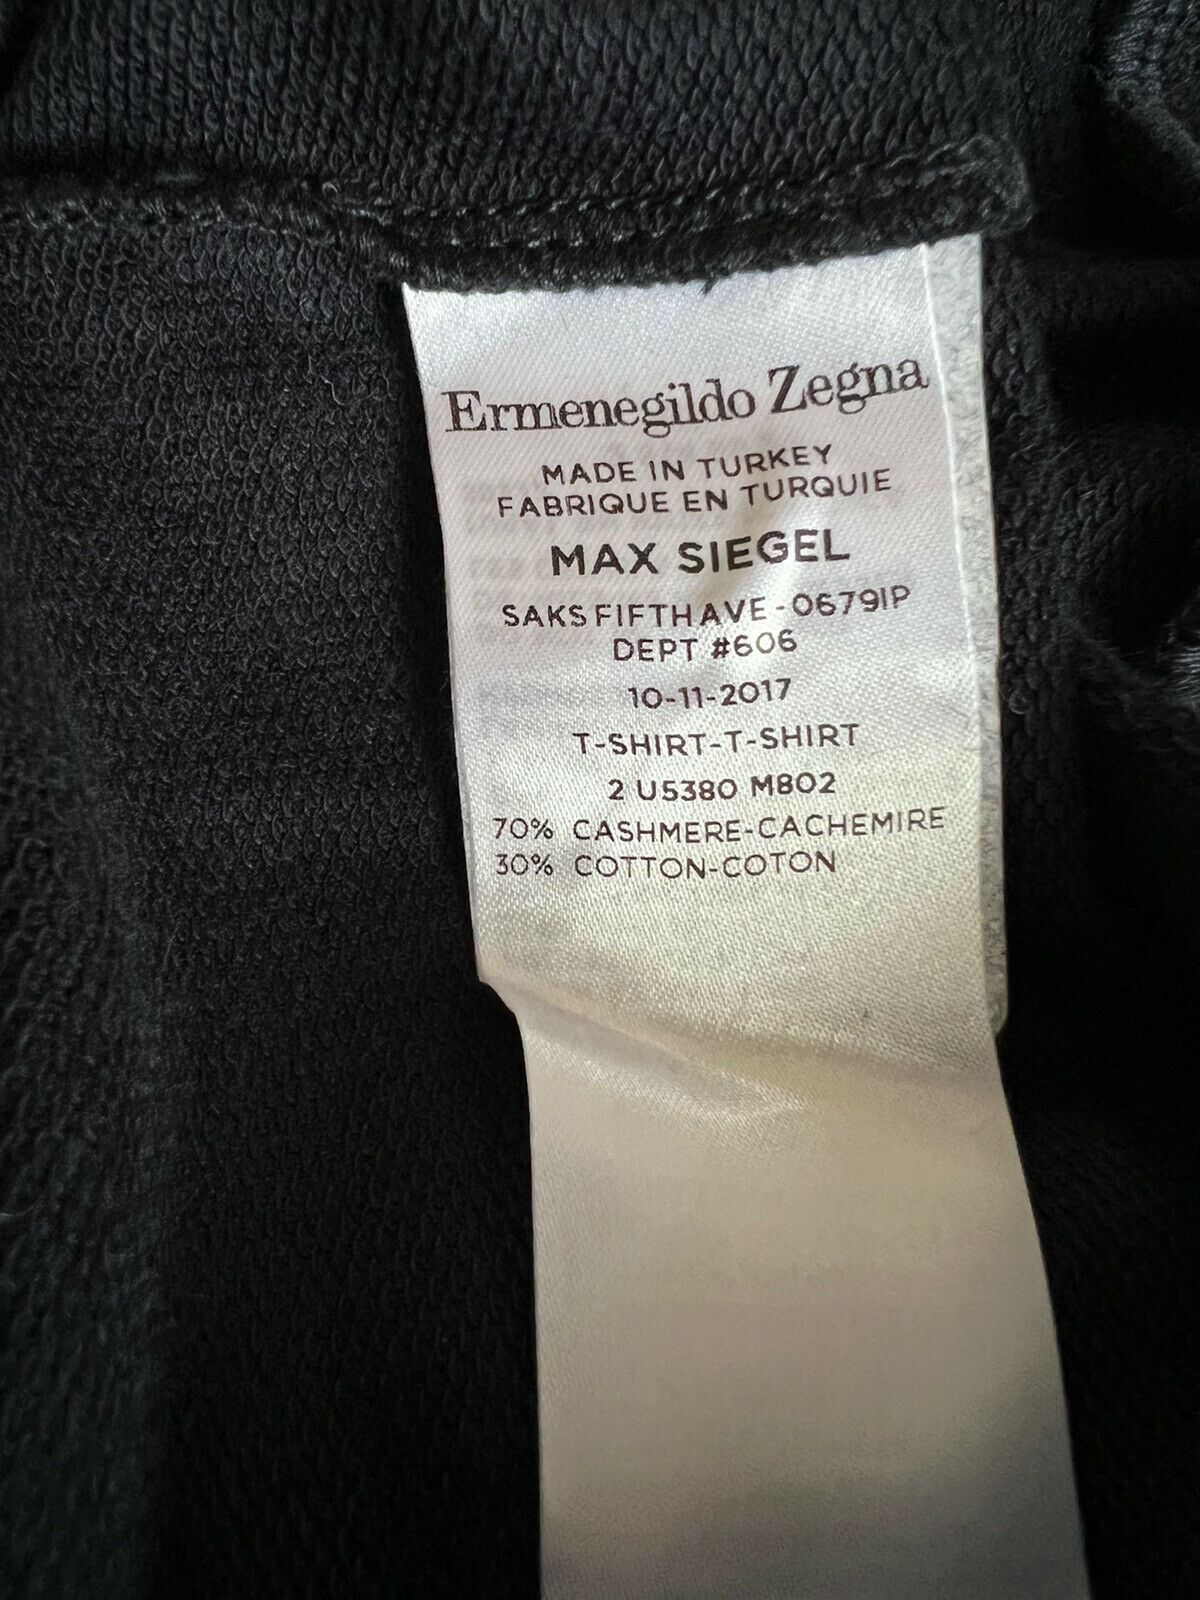 Neu mit Etikett: 1895 $ Ermenegildo Zegna Herren-Pullover aus Kaschmir/Baumwolle mit Rundhalsausschnitt, 48 US (64 Eu)